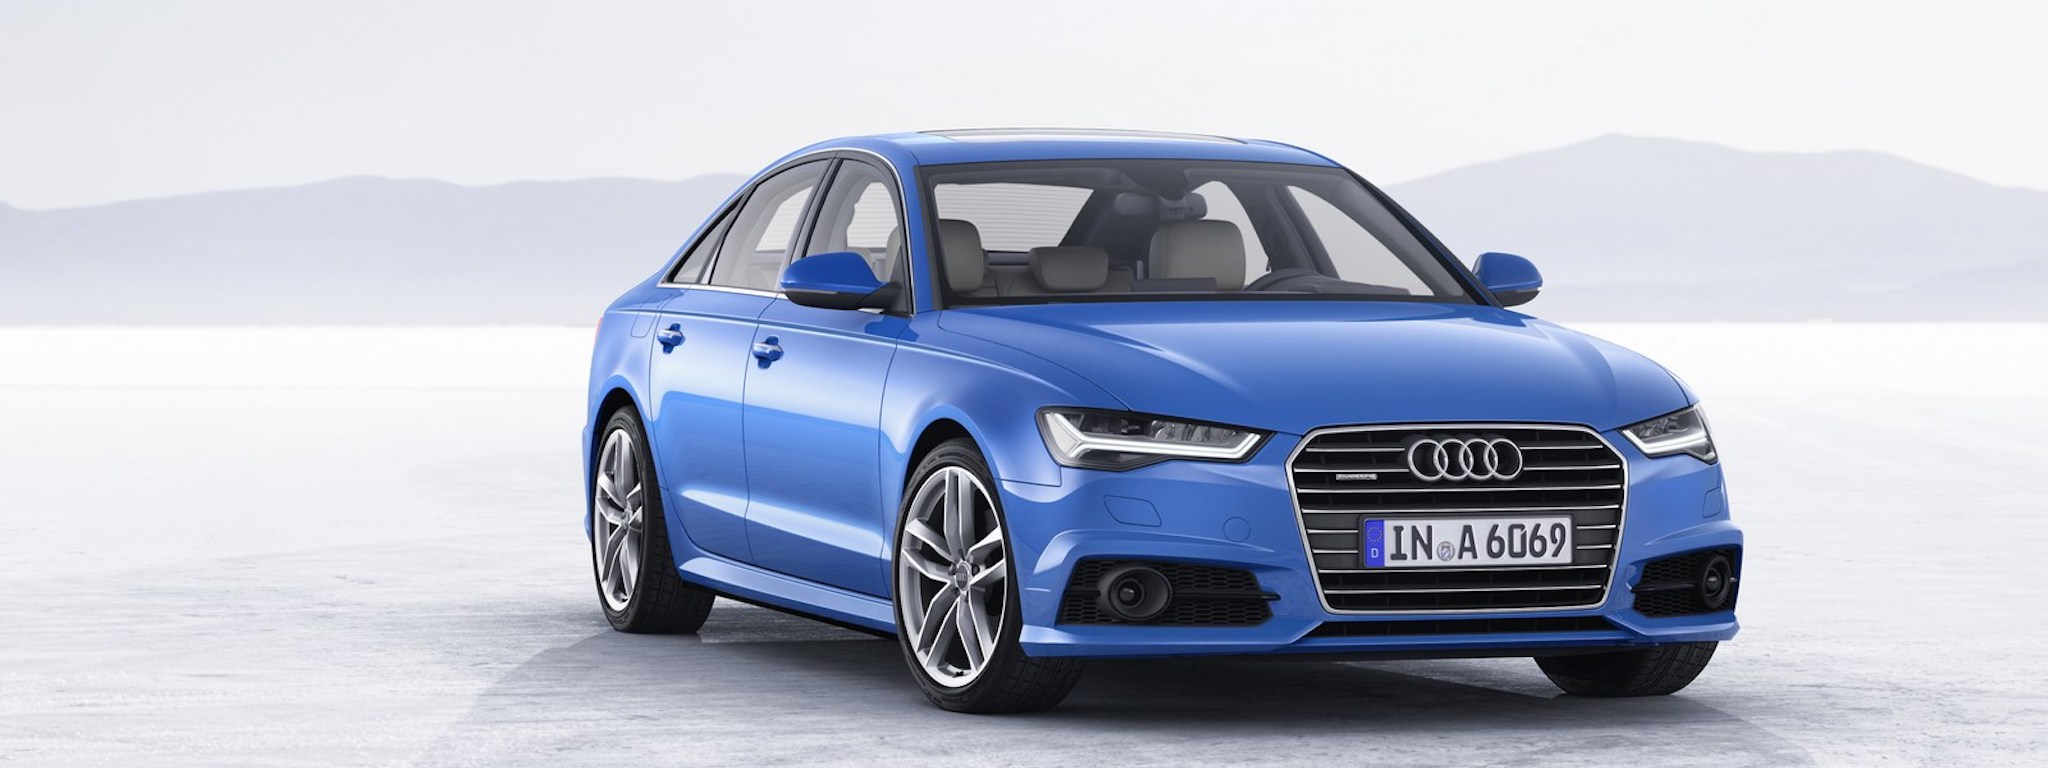 Audi có thể đã xuất xưởng hàng ngàn xe có cùng số khung (VIN)